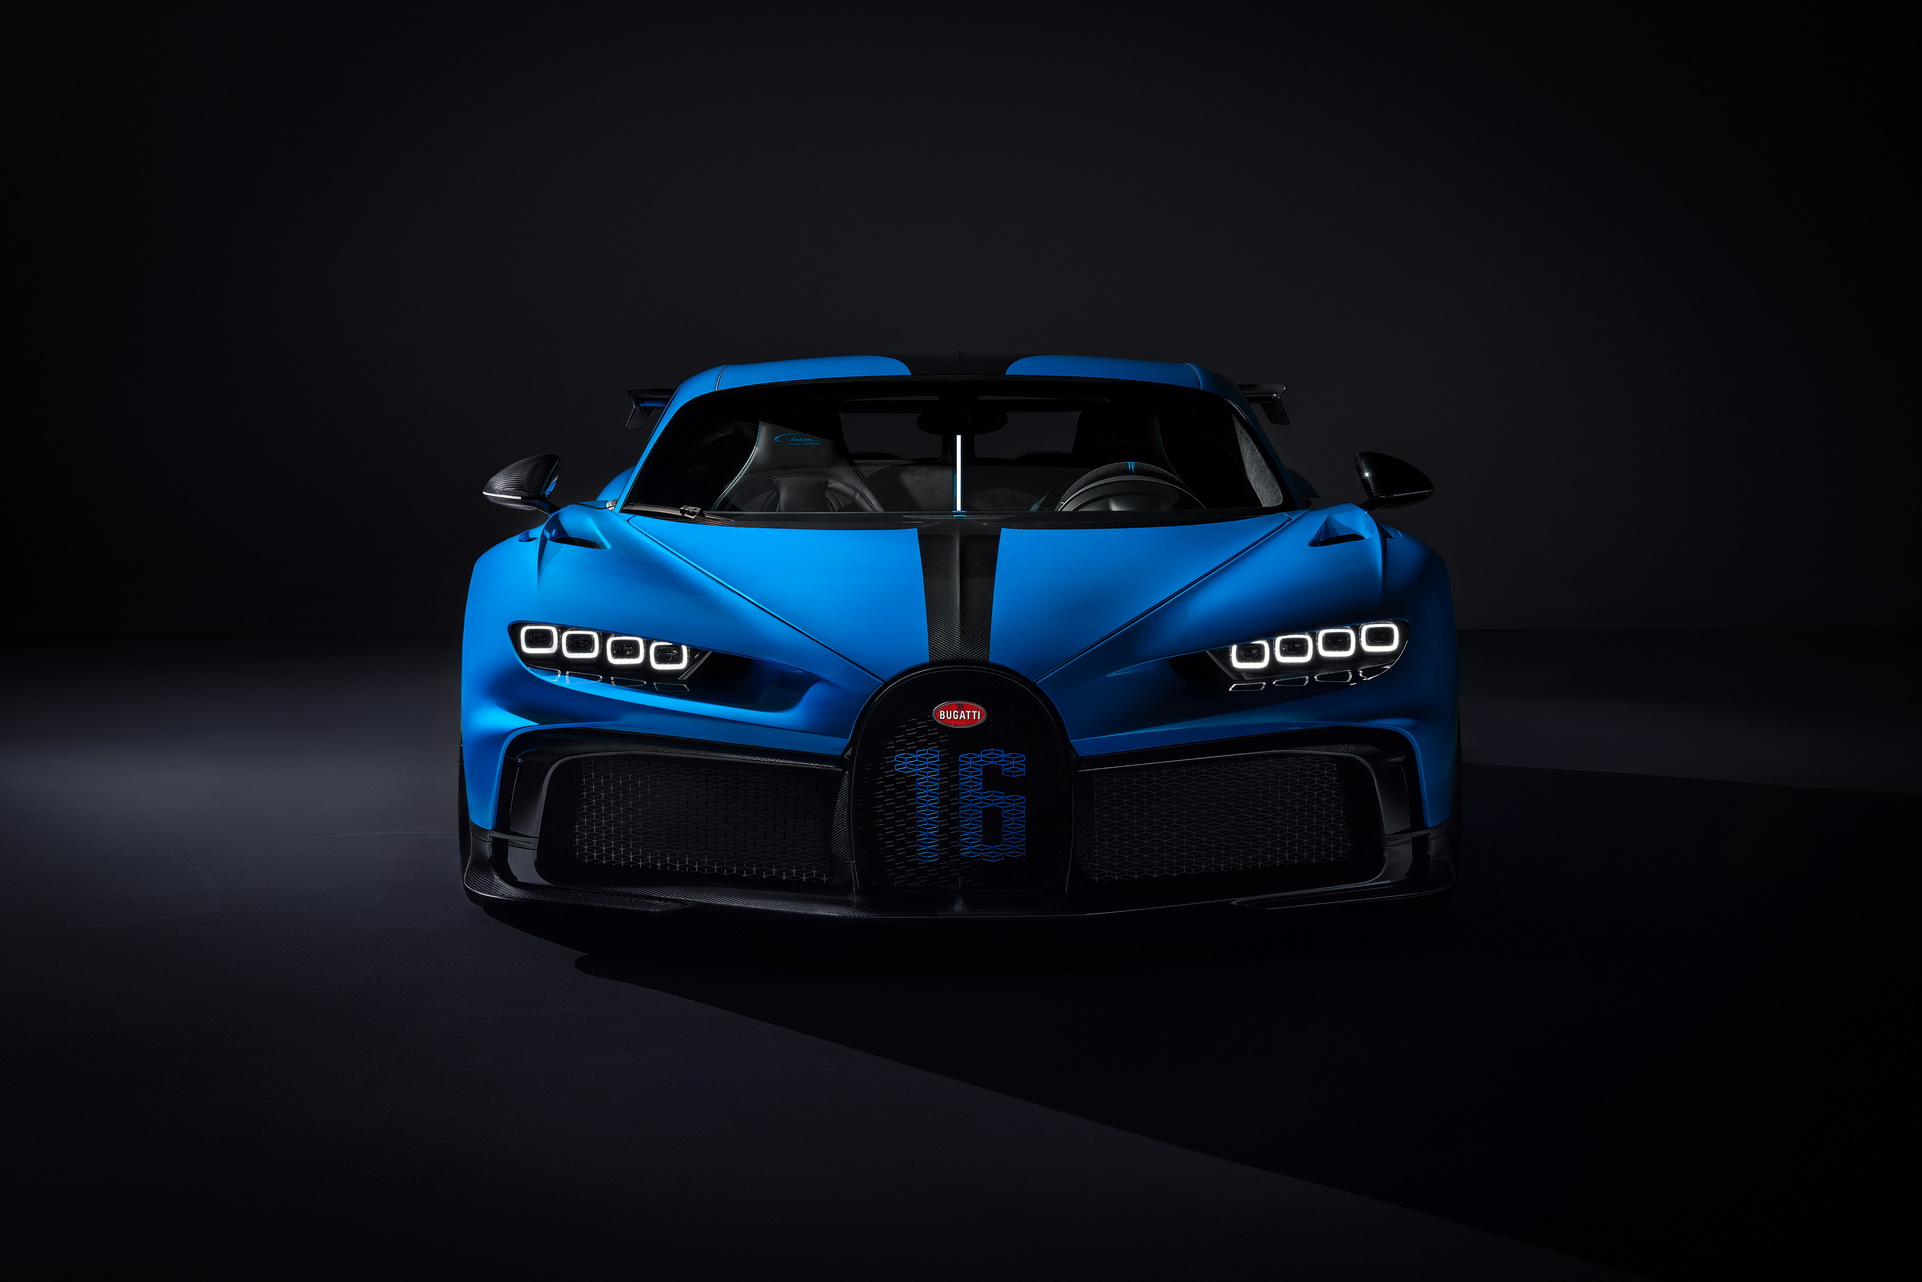 Siêu xe Bugatti Chiron Pur Sport là một trong những dòng siêu xe yêu thích nhất của nhiều người. Với tốc độ kinh ngạc, thiết kế độc đáo và công nghệ tiên tiến nhất, chiếc xe này khiến cho việc lái xe trở nên thú vị và đầy thử thách. Hãy xem ảnh về siêu xe Bugatti Chiron Pur Sport để cảm nhận được sự đẳng cấp và đẳng đáng của chiếc xe này.